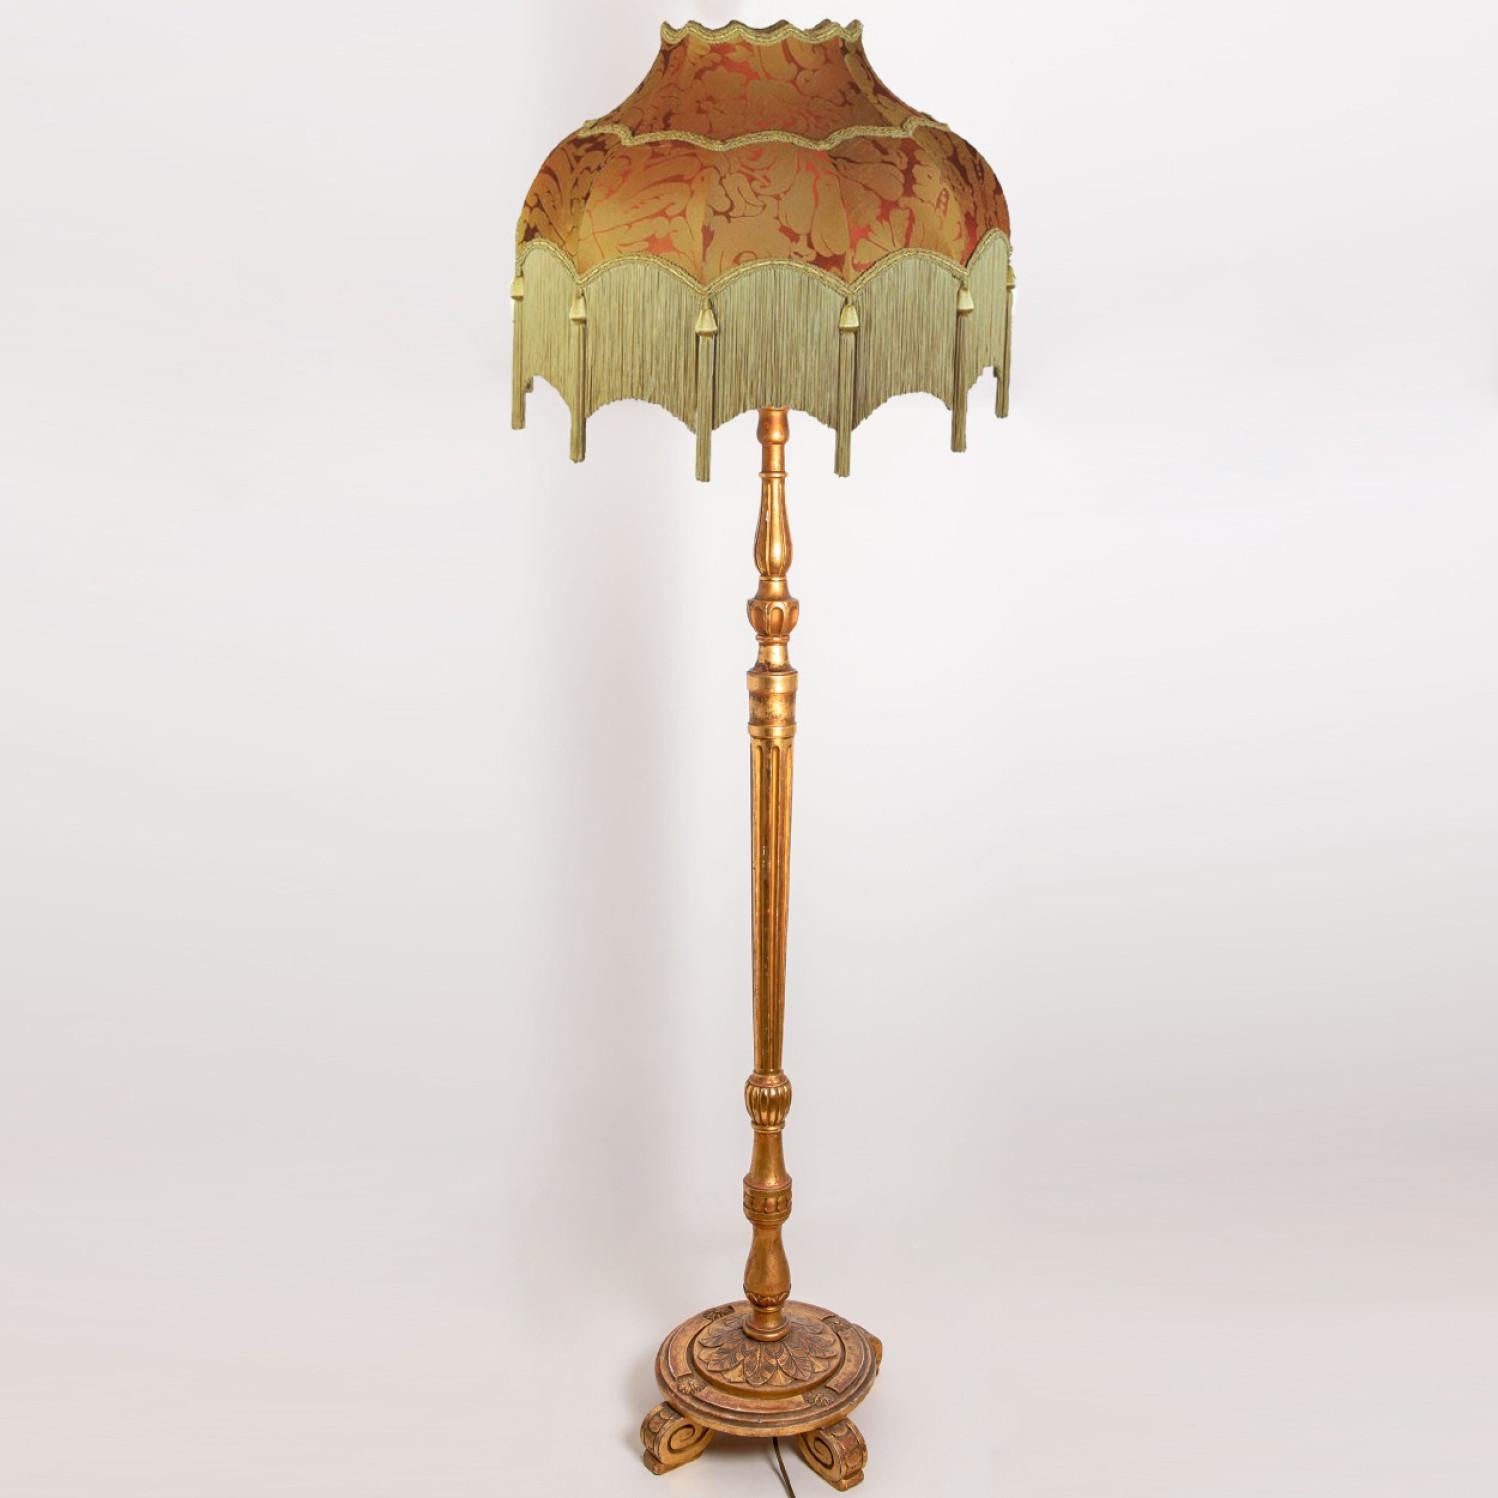 Wunderschöne handgeschnitzte italienische Stehlampe aus Holz mit einem wunderschönen handgefertigten Lampenschirm mit Fransen. Der Holzsockel ist handgeschnitzt und wurde um 1970 in Italien hergestellt.
Die Lampe hat einen auffälligen, gewellten